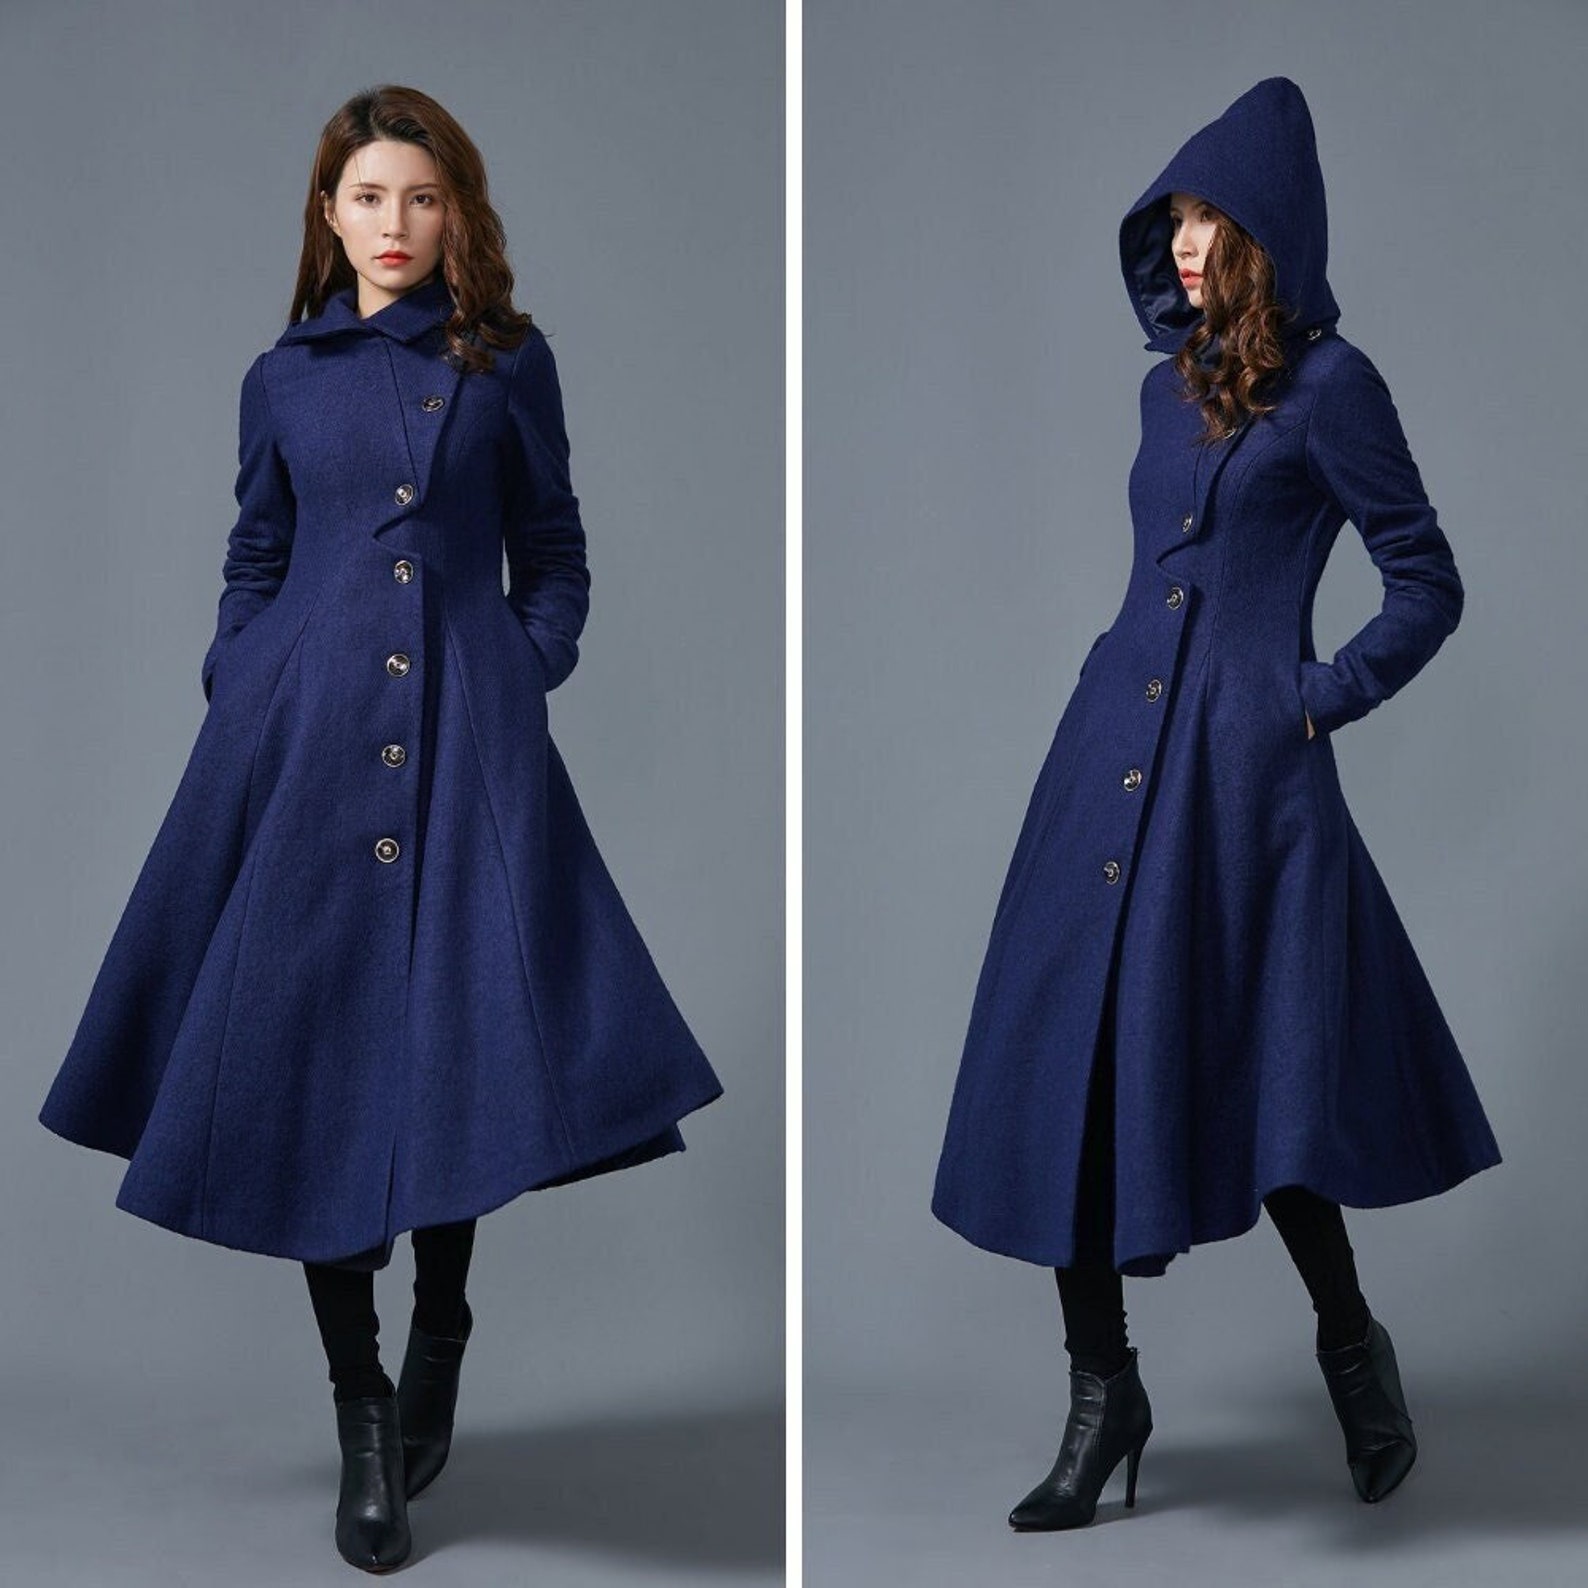 Hooded Wool Coat Women Blue Wool Winter Coat Asymmetric Long | Etsy